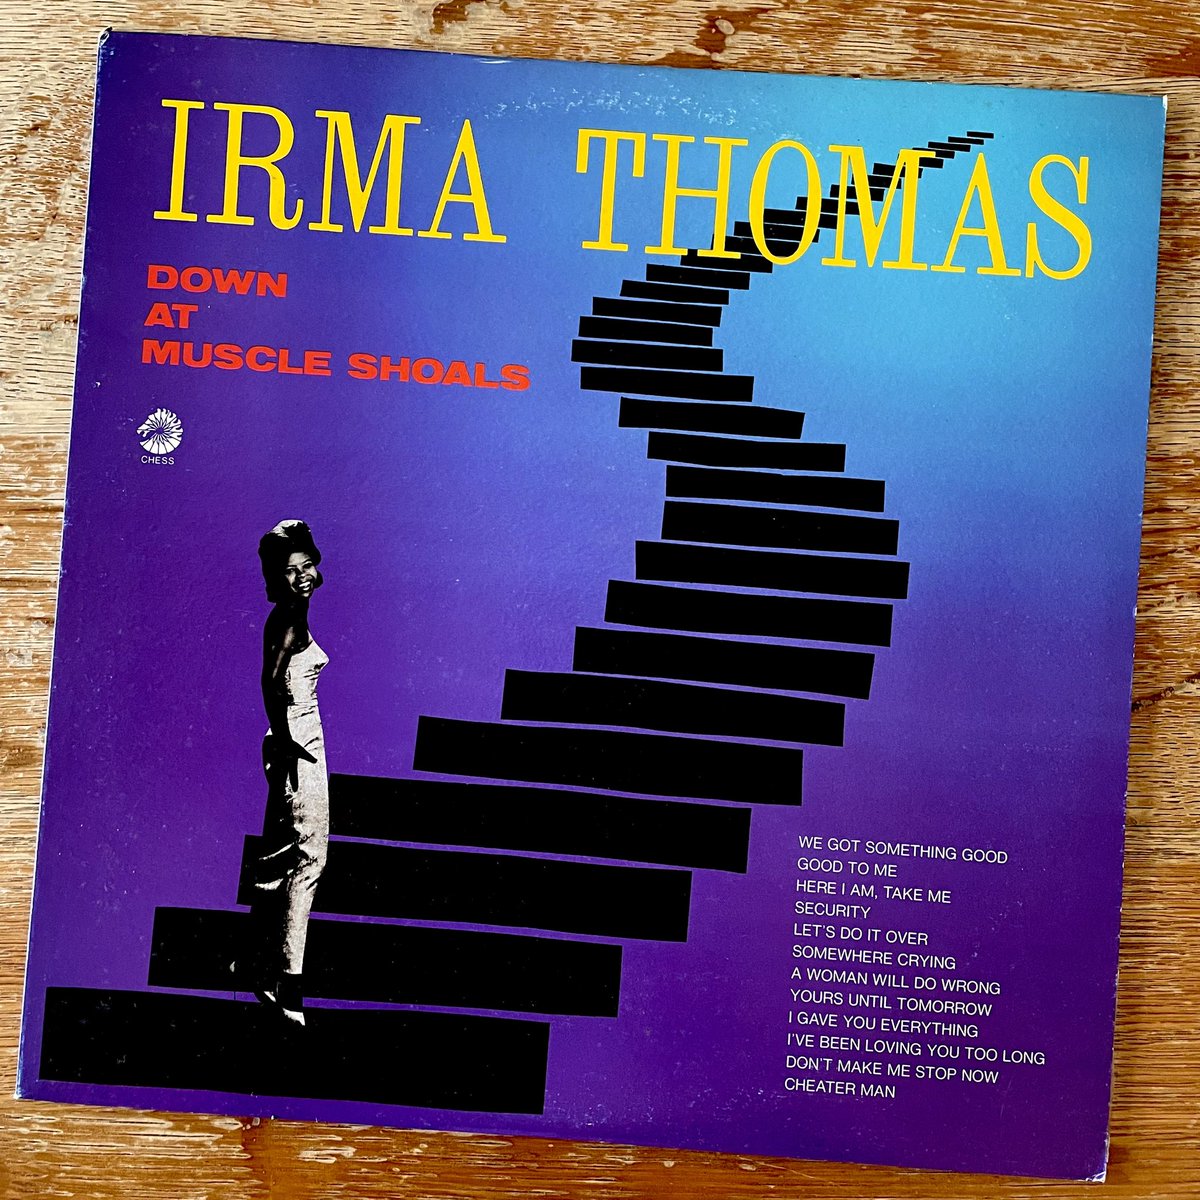 【一曲一献】A woman will do wrong / Irma Thomas youtu.be/es2mgB6JXZ0?si…
#一曲一献 
#IrmaThomas